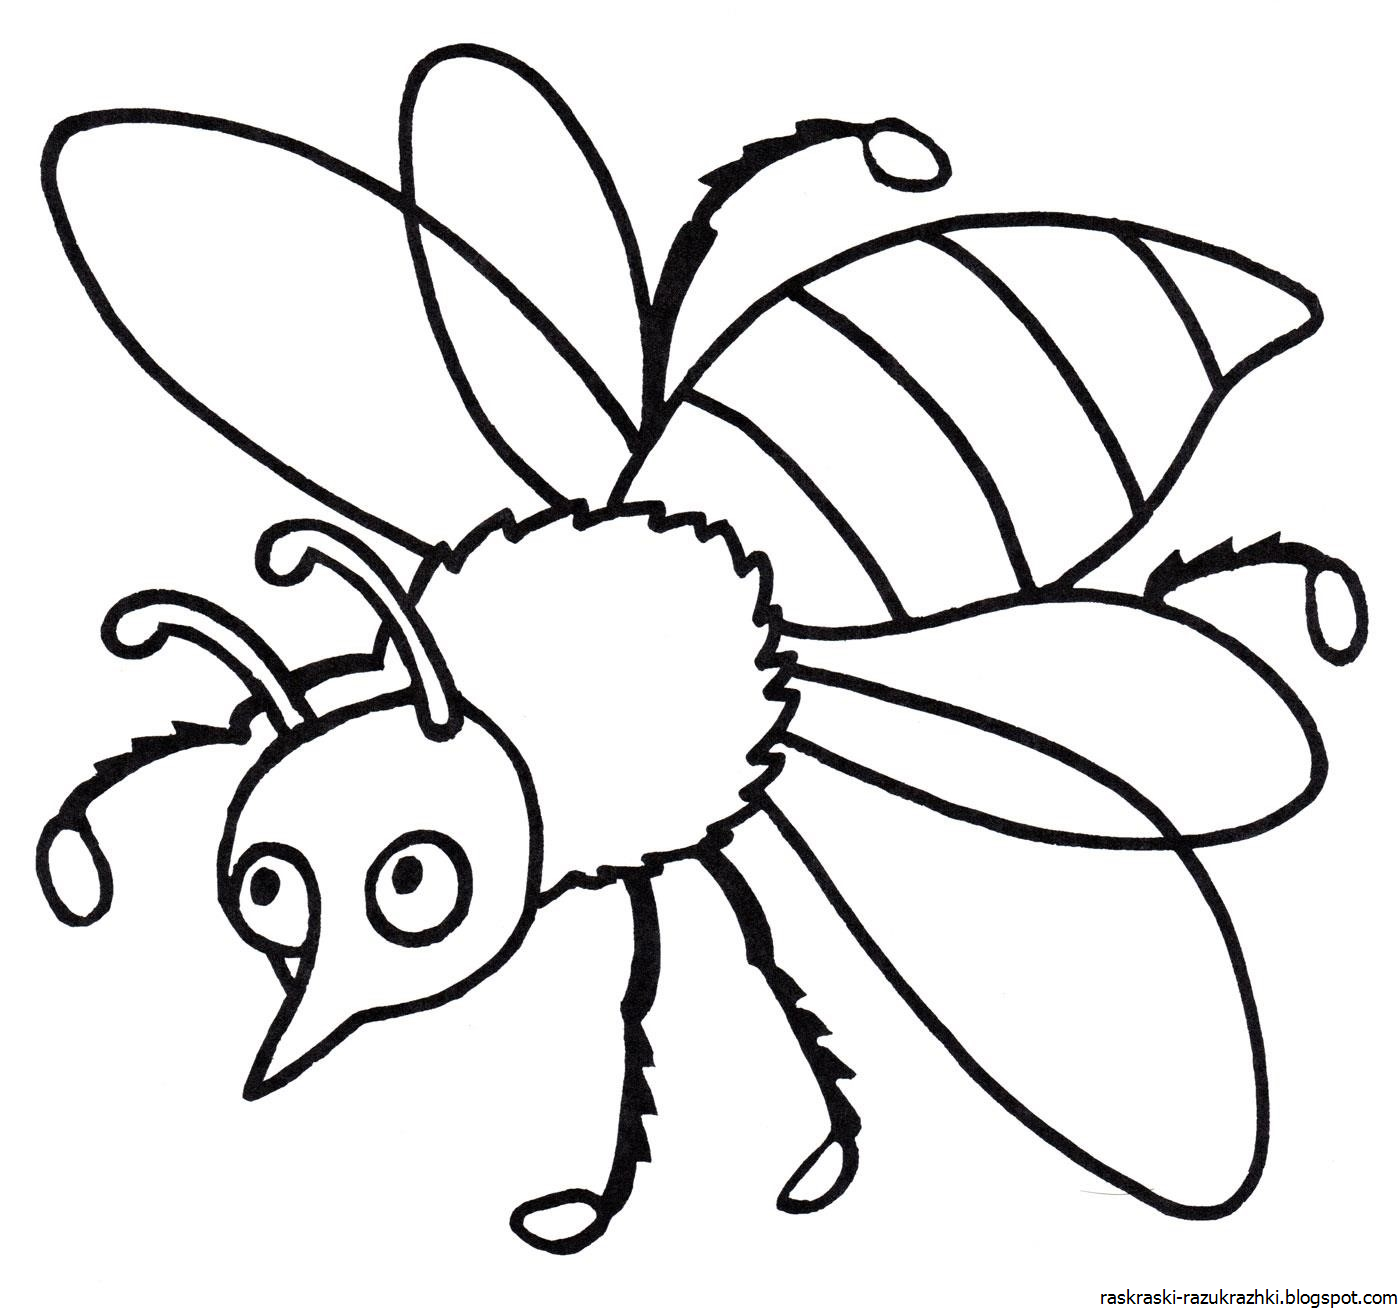 Раскраски для детей 3 лет насекомые. Насекомые раскраска для детей. Раскраски насекомые для детей 5-6 лет. Пчела раскраска. Раскраска насекомые для малышей.